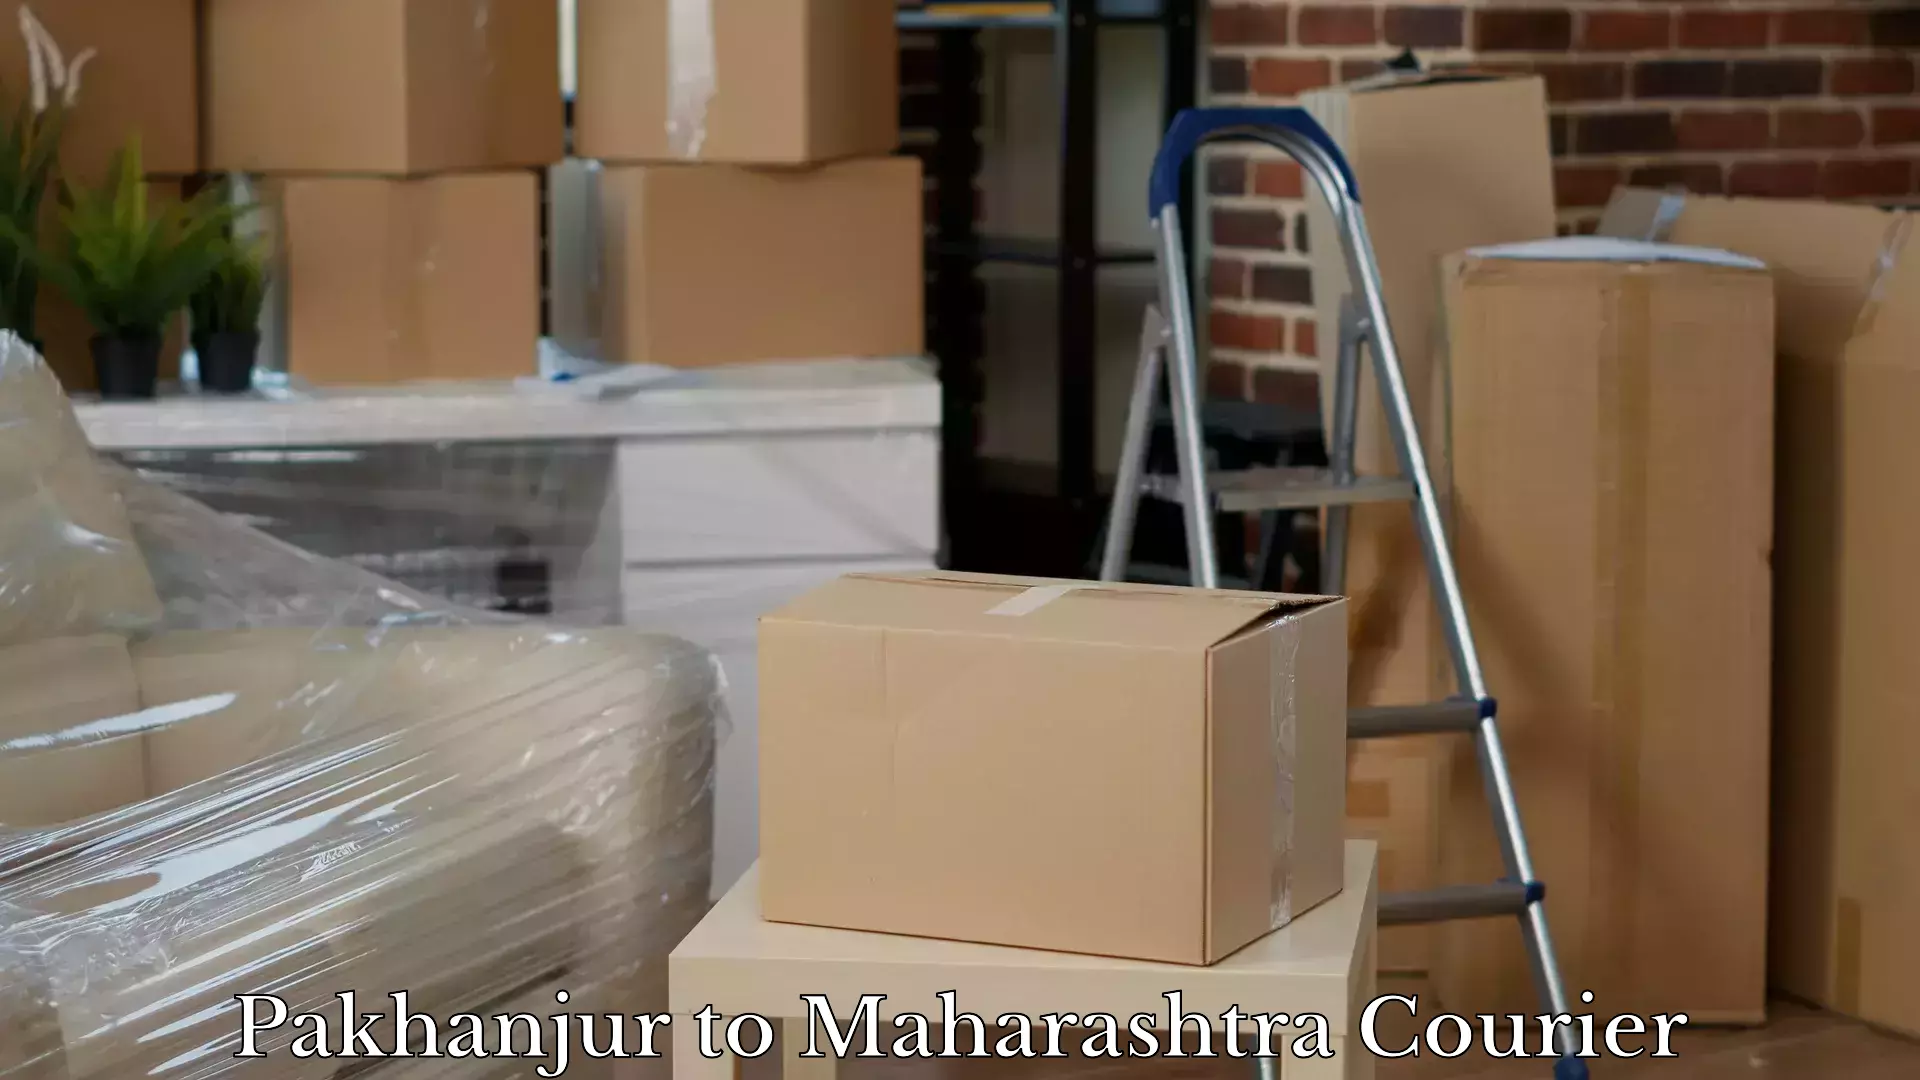 Global baggage shipping Pakhanjur to Kandhar